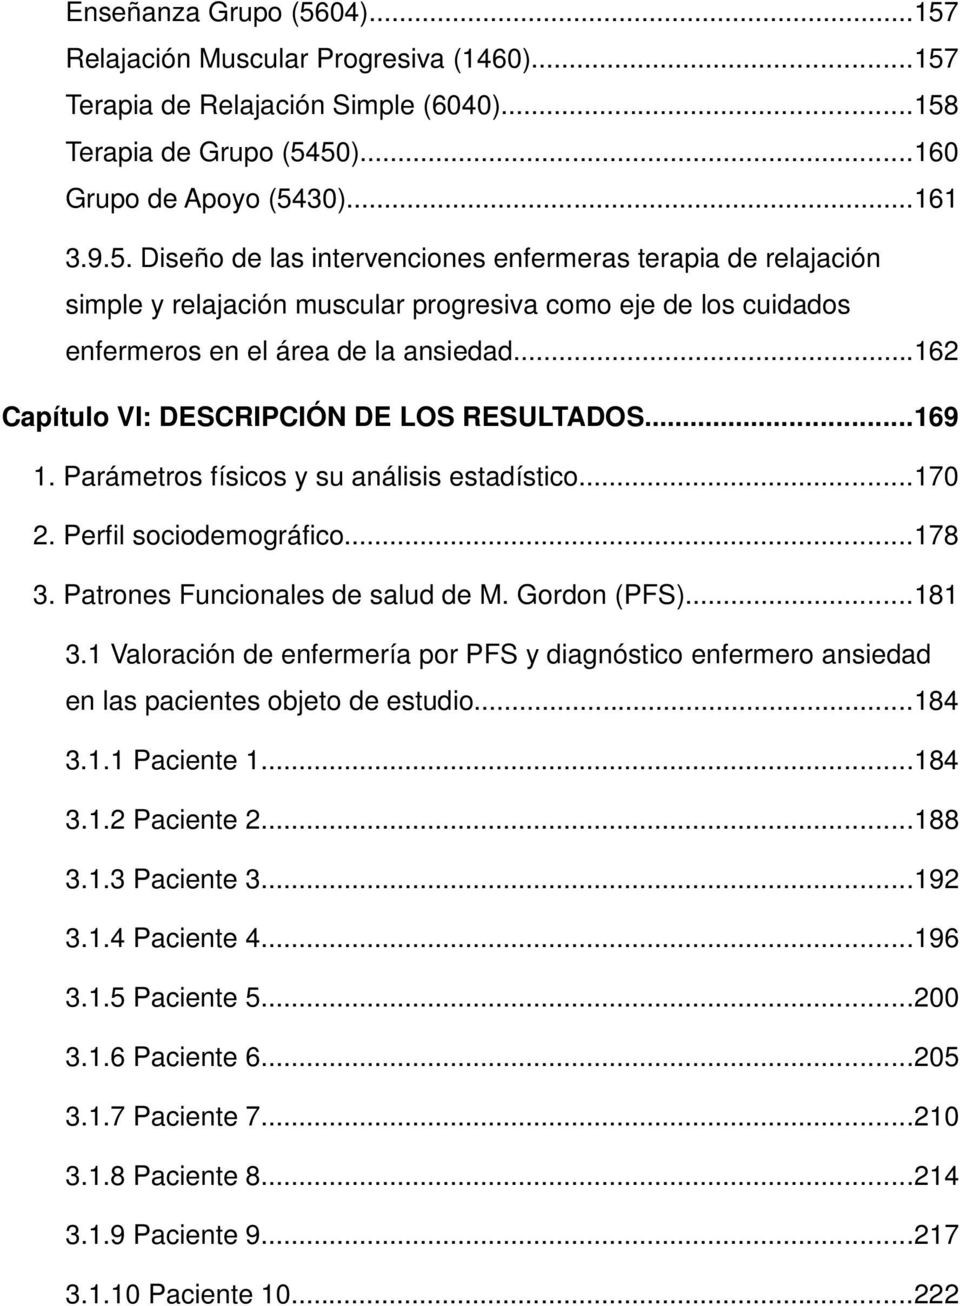 1 Valoración de enfermería por PFS y diagnóstico enfermero ansiedad en las pacientes objeto de estudio...184 3.1.1 Paciente 1...184 3.1.2 Paciente 2...188 3.1.3 Paciente 3...192 3.1.4 Paciente 4.